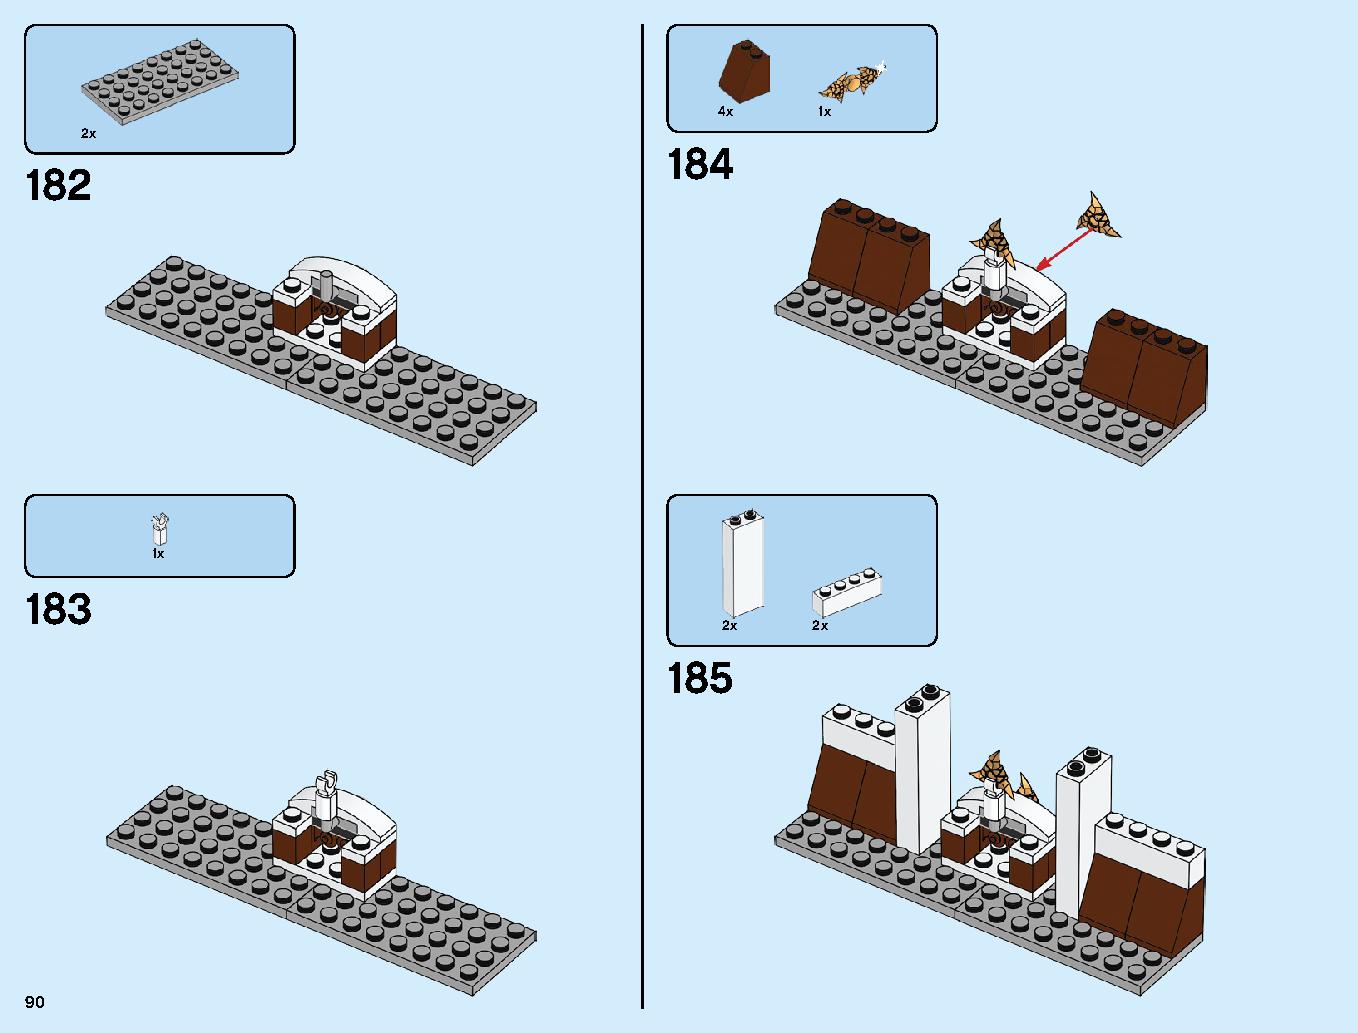 ニンジャ道場 70670 レゴの商品情報 レゴの説明書・組立方法 90 page